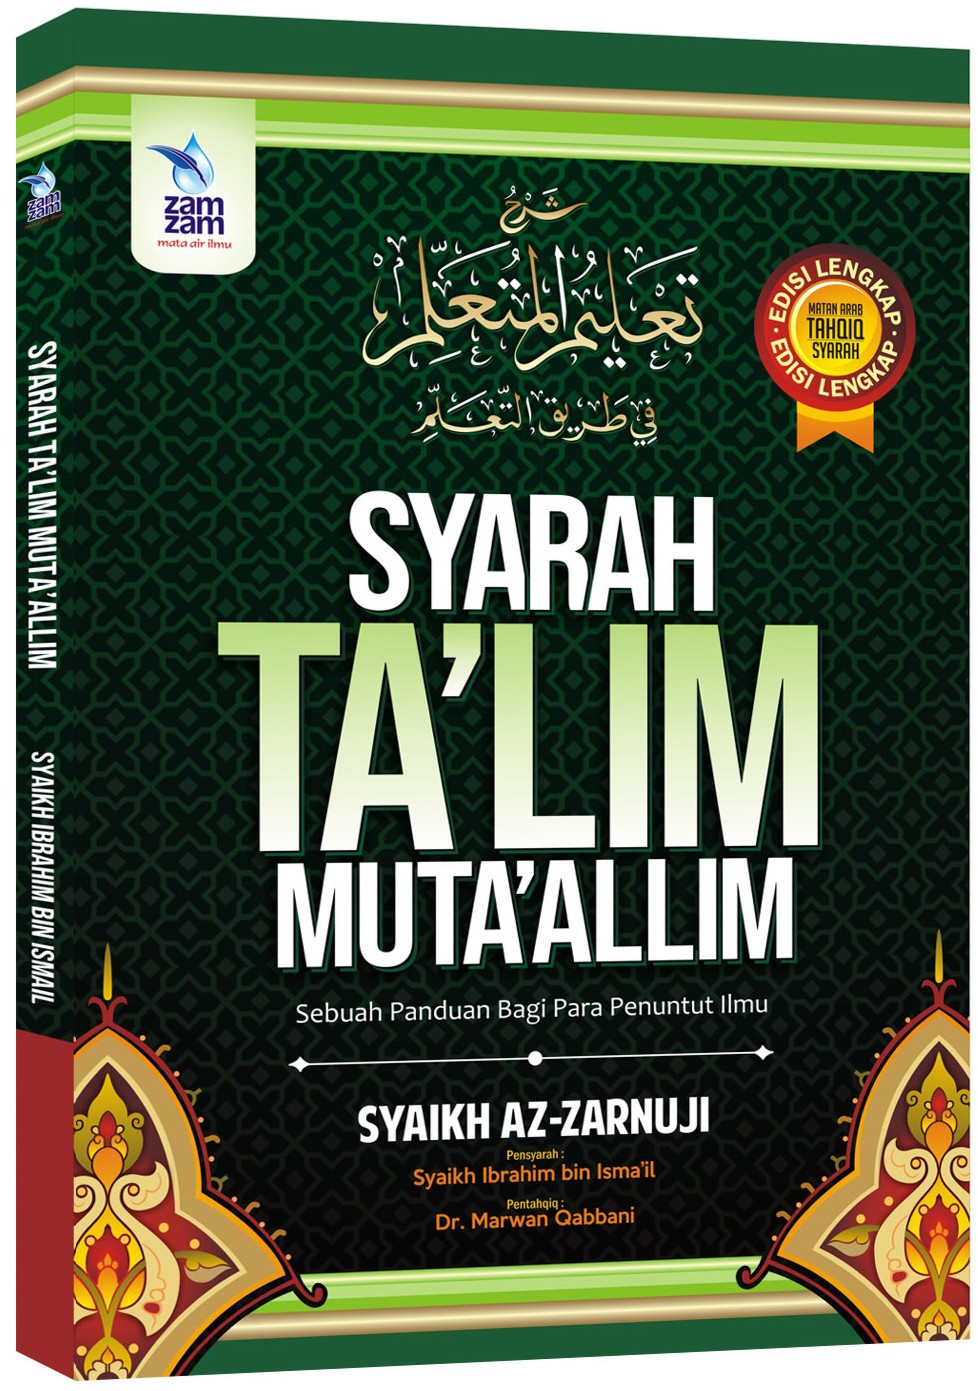 Download Terjemahan Kitab Ta'lim Muta'alim Pdf File